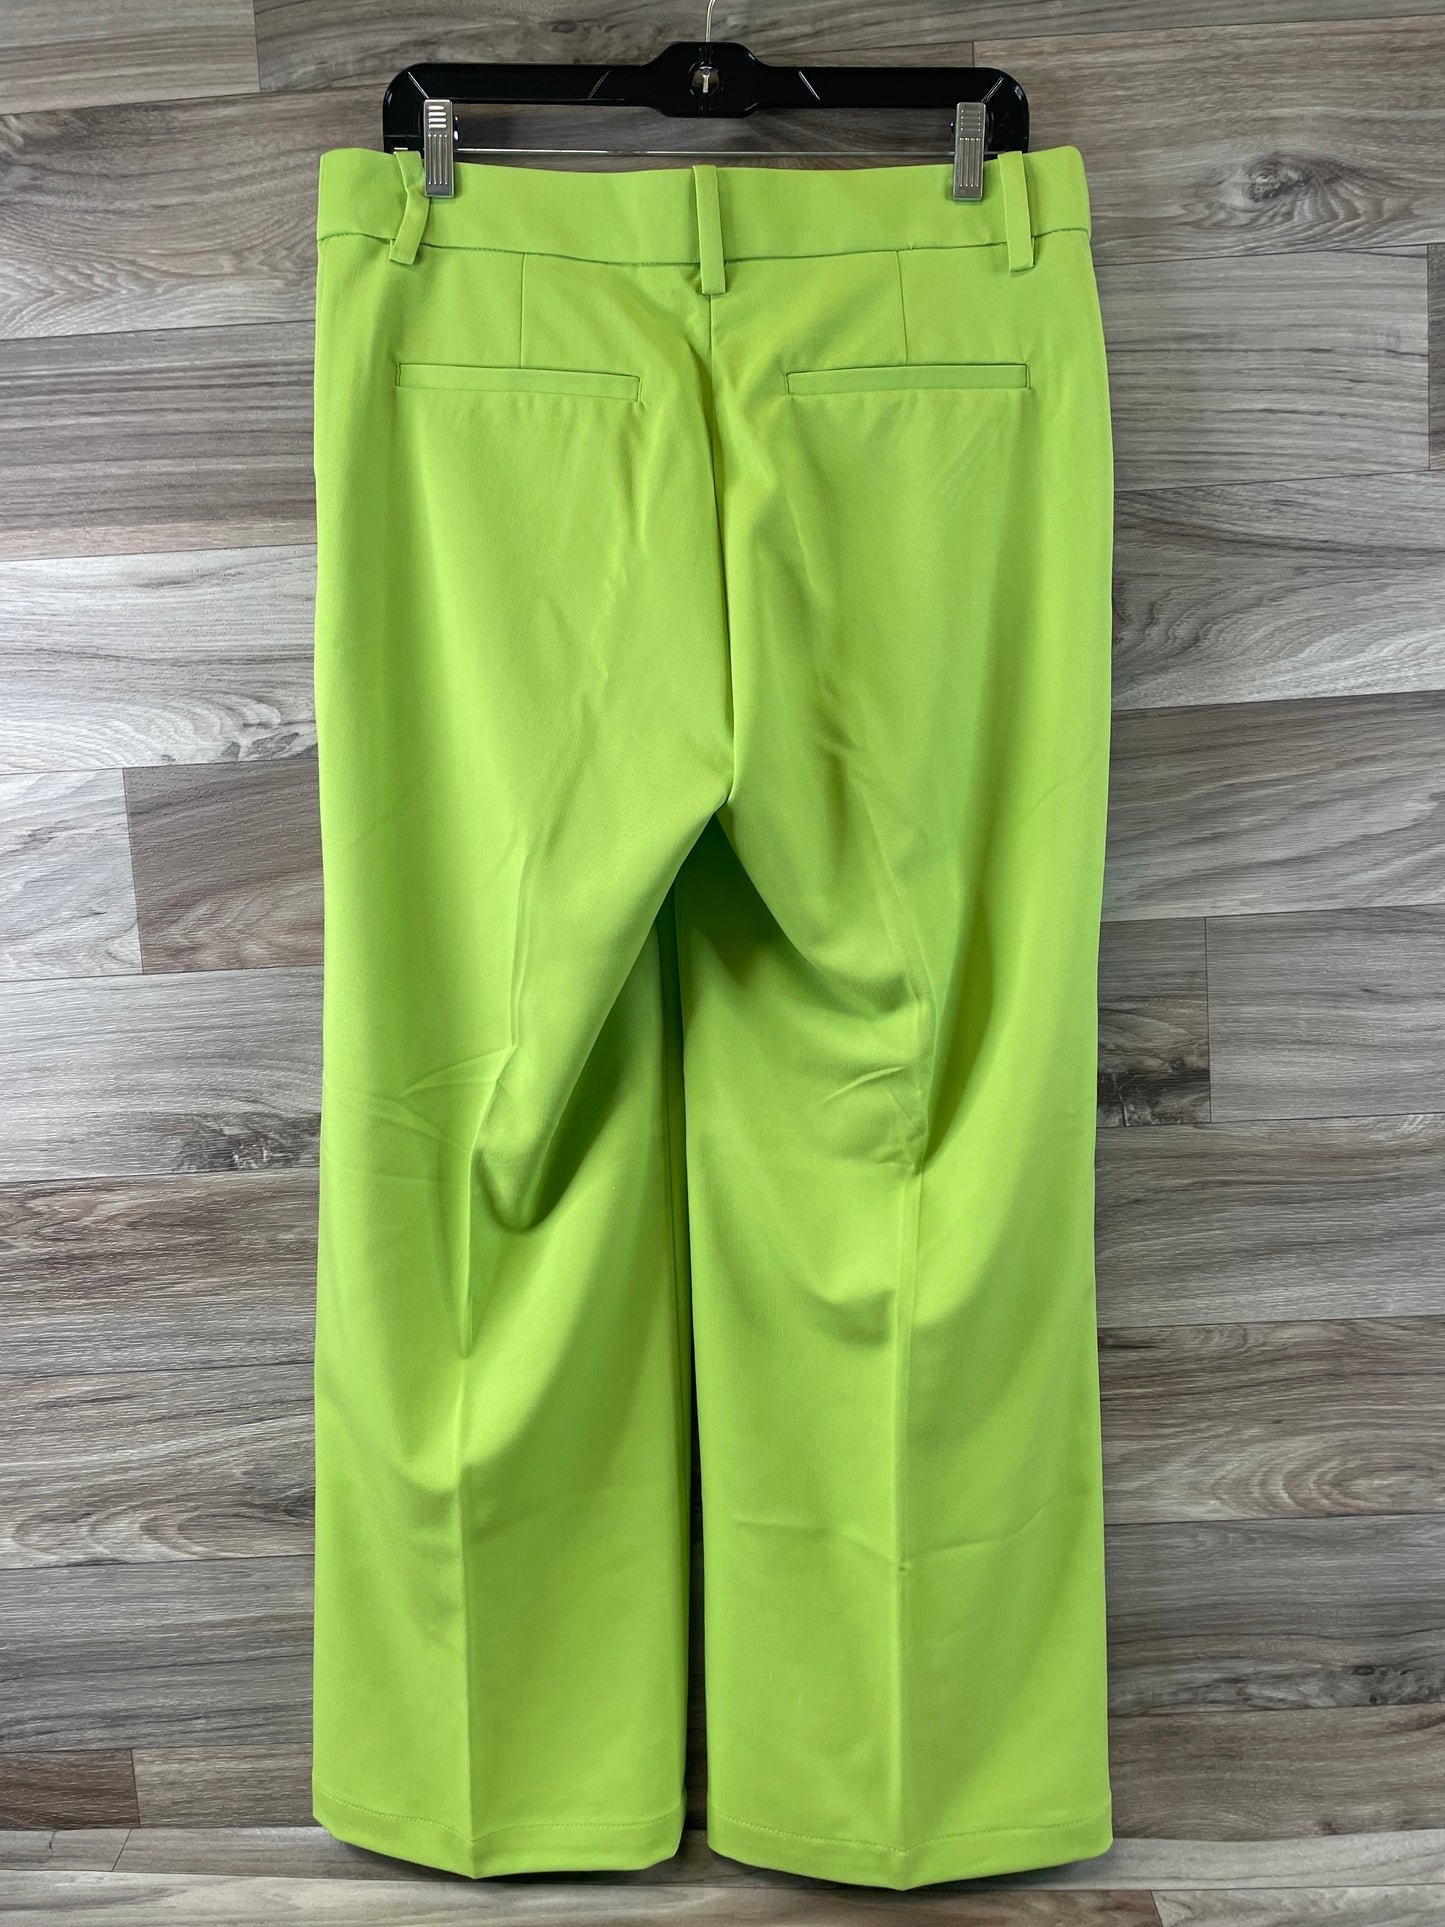 Green Pants Wide Leg H&m, Size 10